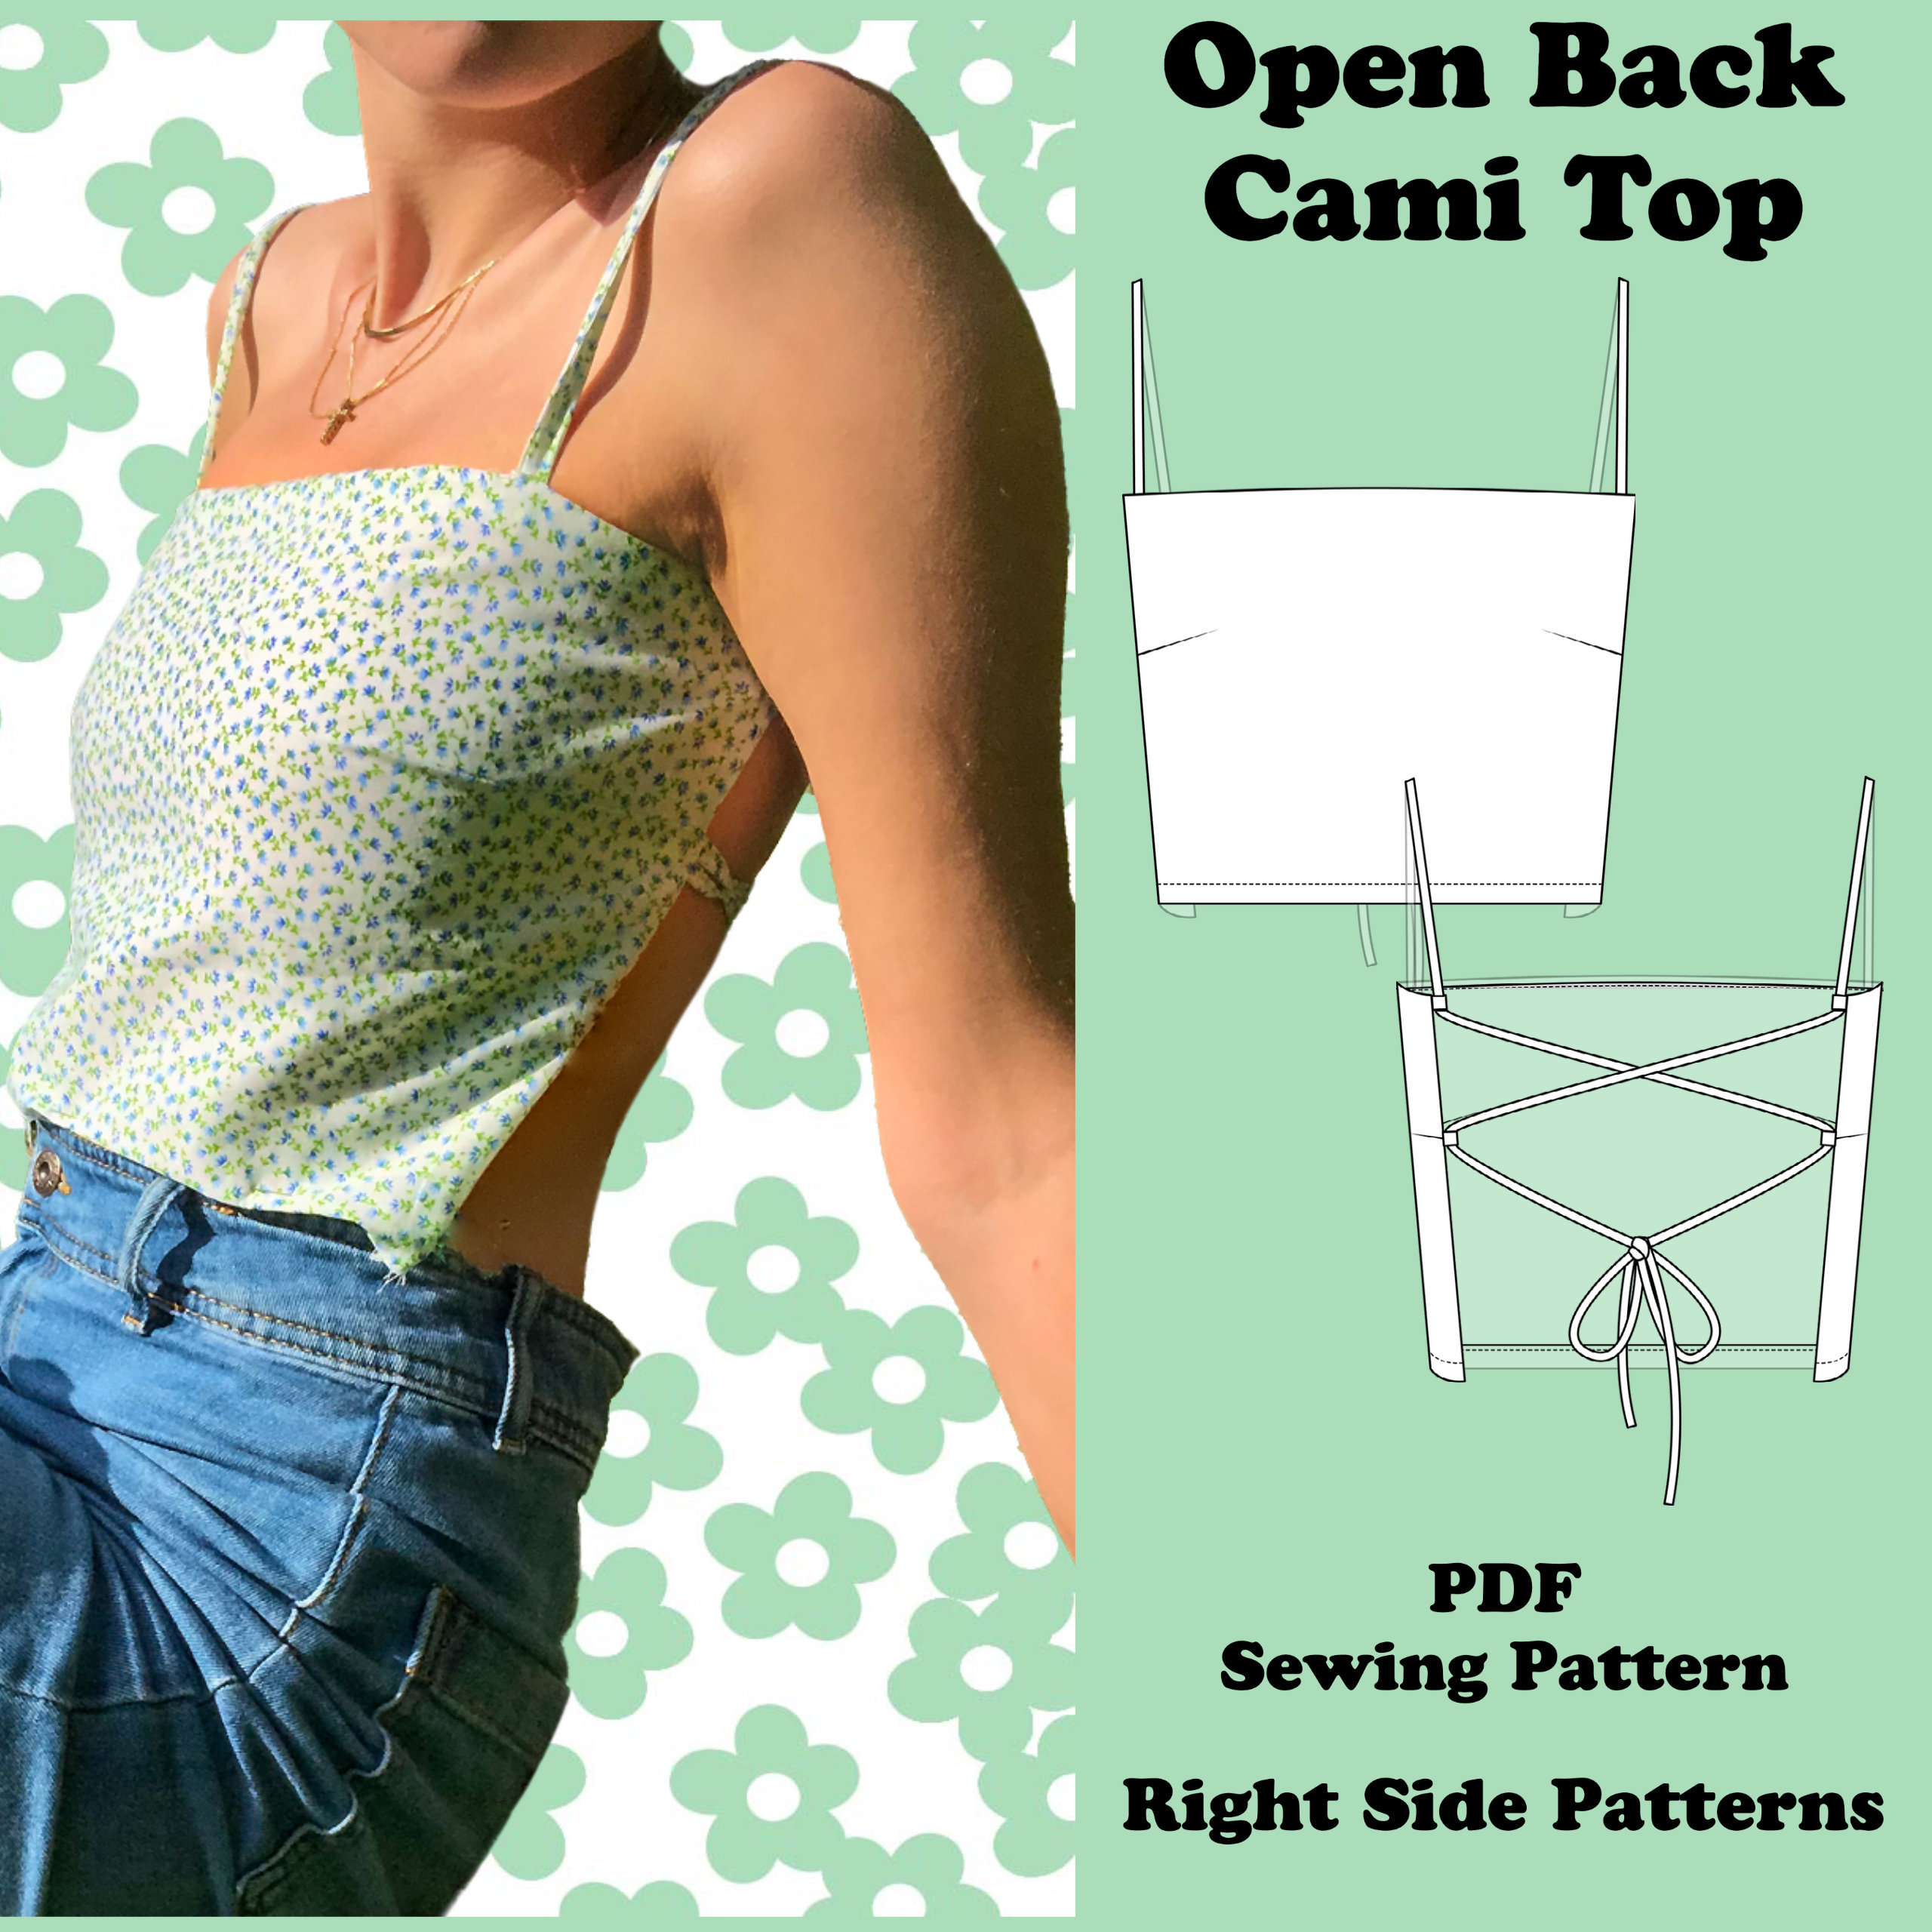 Open Back Crop Top - Women - Ready-to-Wear